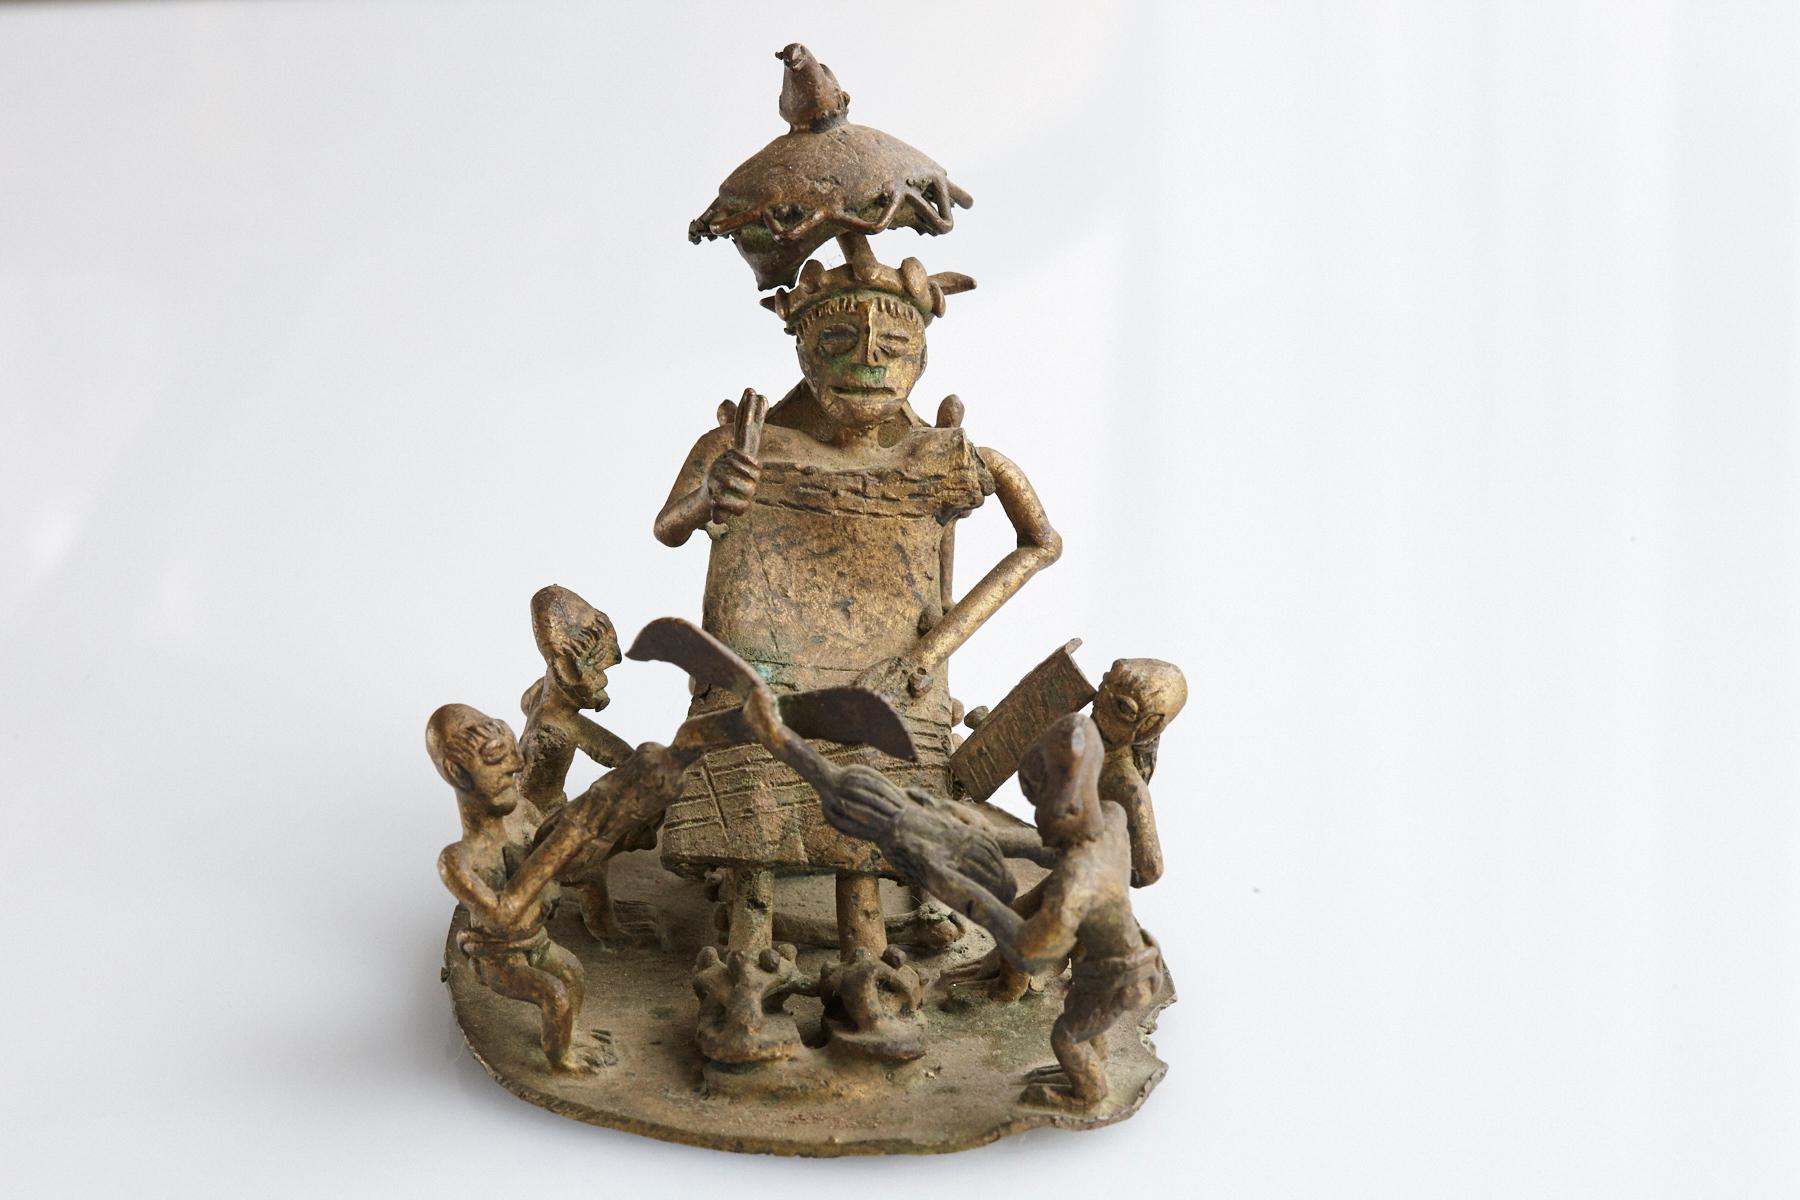 Eine gegossene Bronzegruppe, die einen Stammeshäuptling (König) mit seinen Dienern darstellt. Ein Musiker mit einer Trommel, eine Person mit einem Palmblatt, eine andere mit einem Regenschirm, um Schatten zu spenden, und zwei Wächter mit gekreuzten